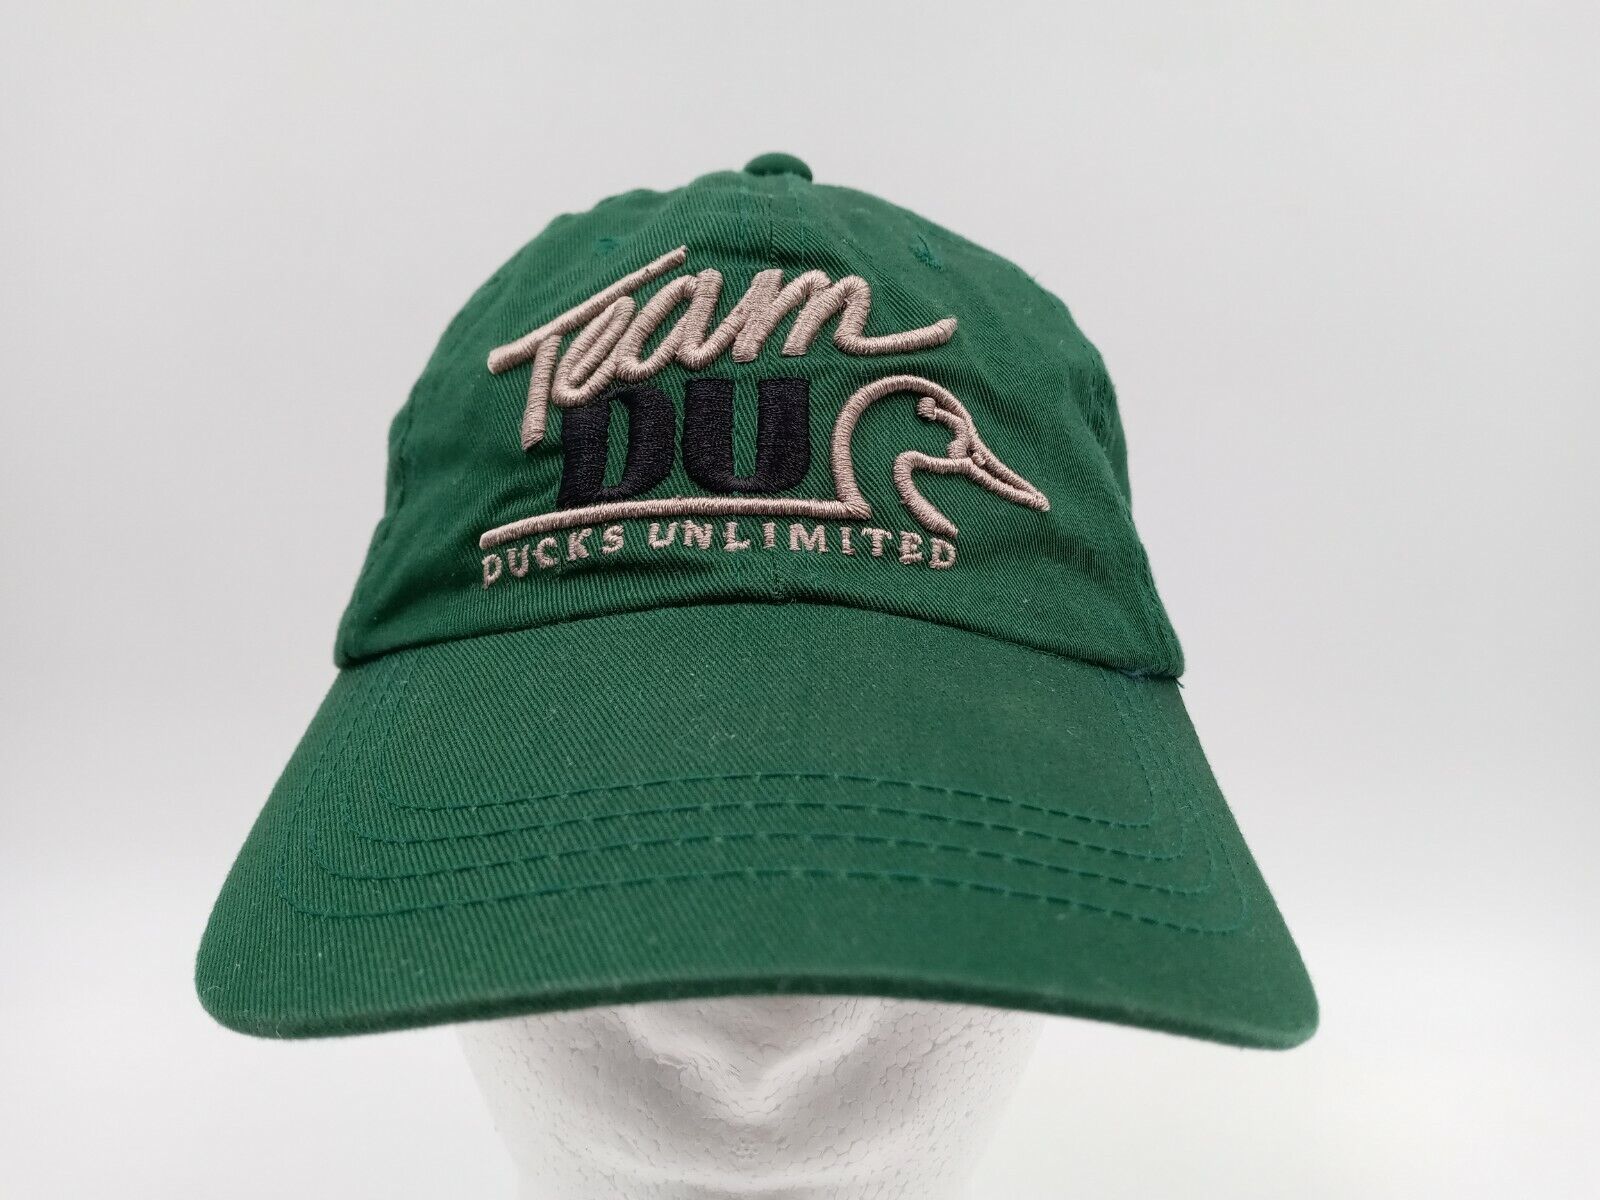 Primary image for Team DU Volunteer Ducks Unlimited Green Baseball Cap Hat Adjustable Back NOS